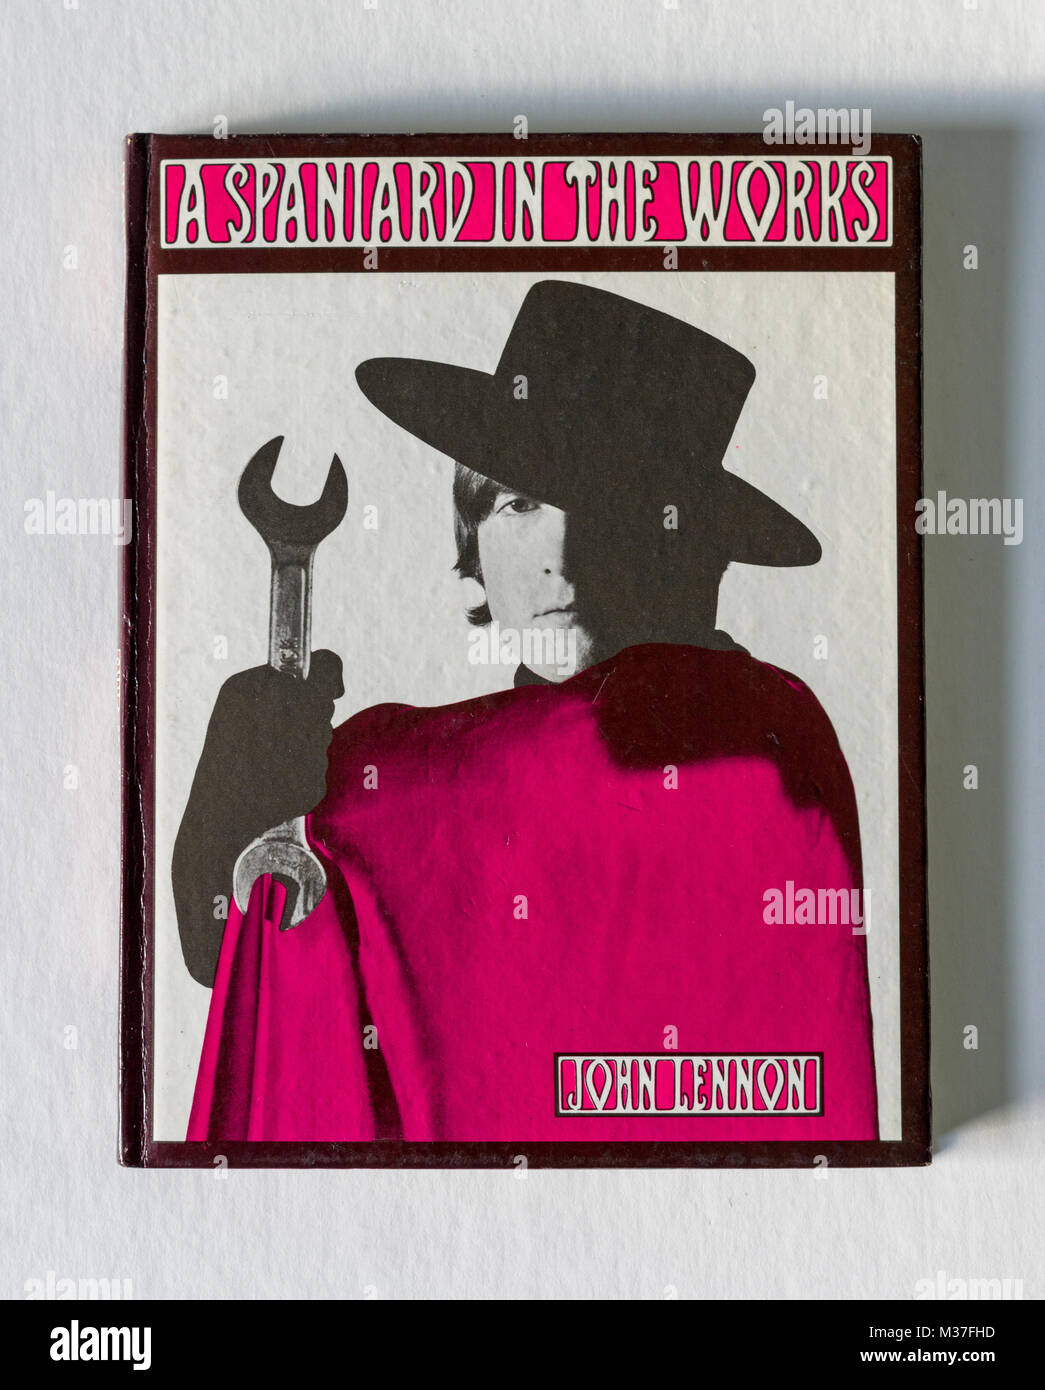 Ein Spanier in den Werken, ein Buch von Beatle John Lennon, 1965 veröffentlicht, bestehend aus skurrilen Geschichten und Zeichnungen. Stockfoto